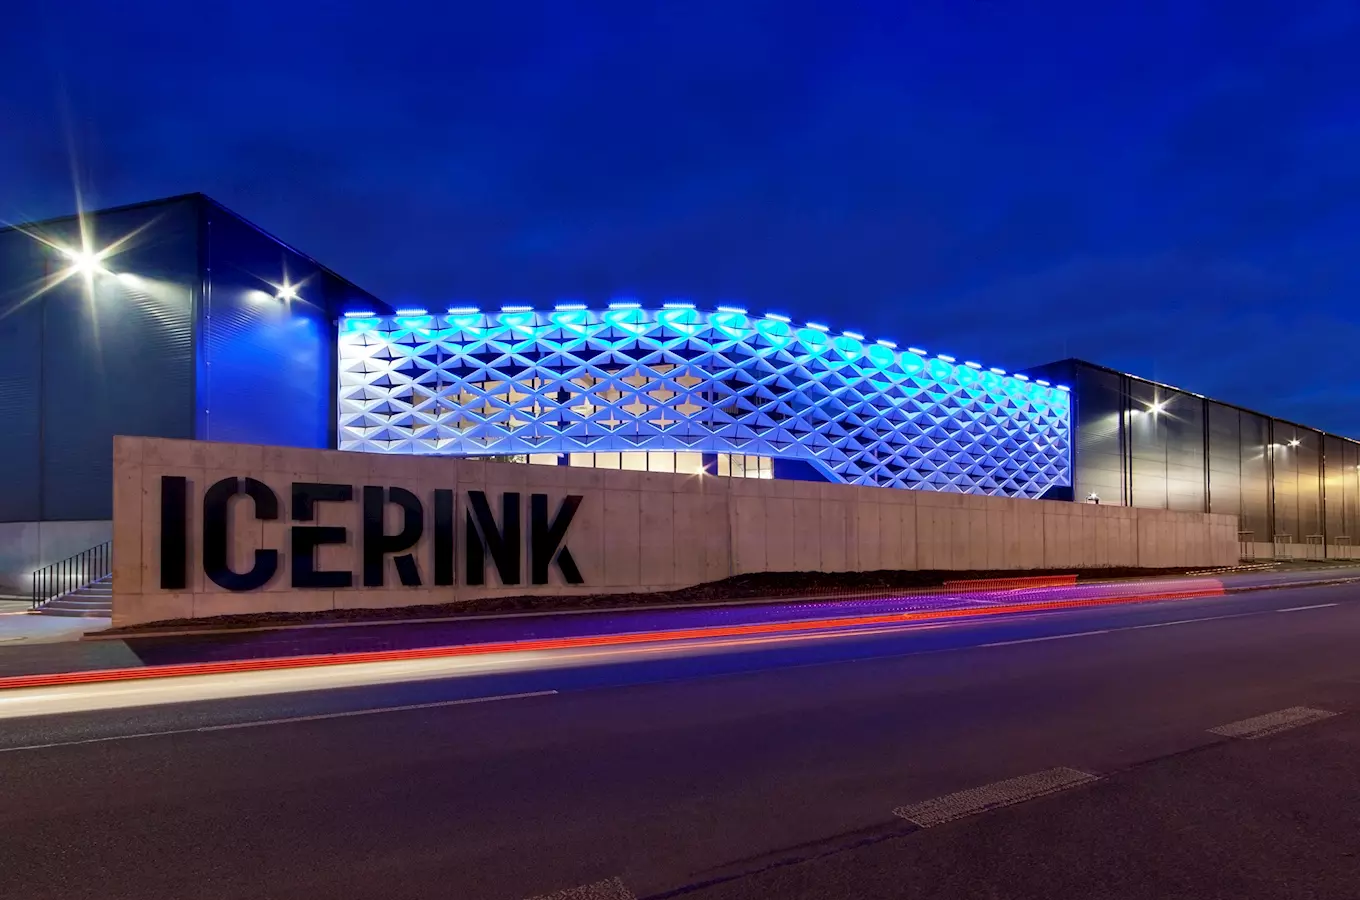 Zimní stadion Icerink v pražských Strašnicích